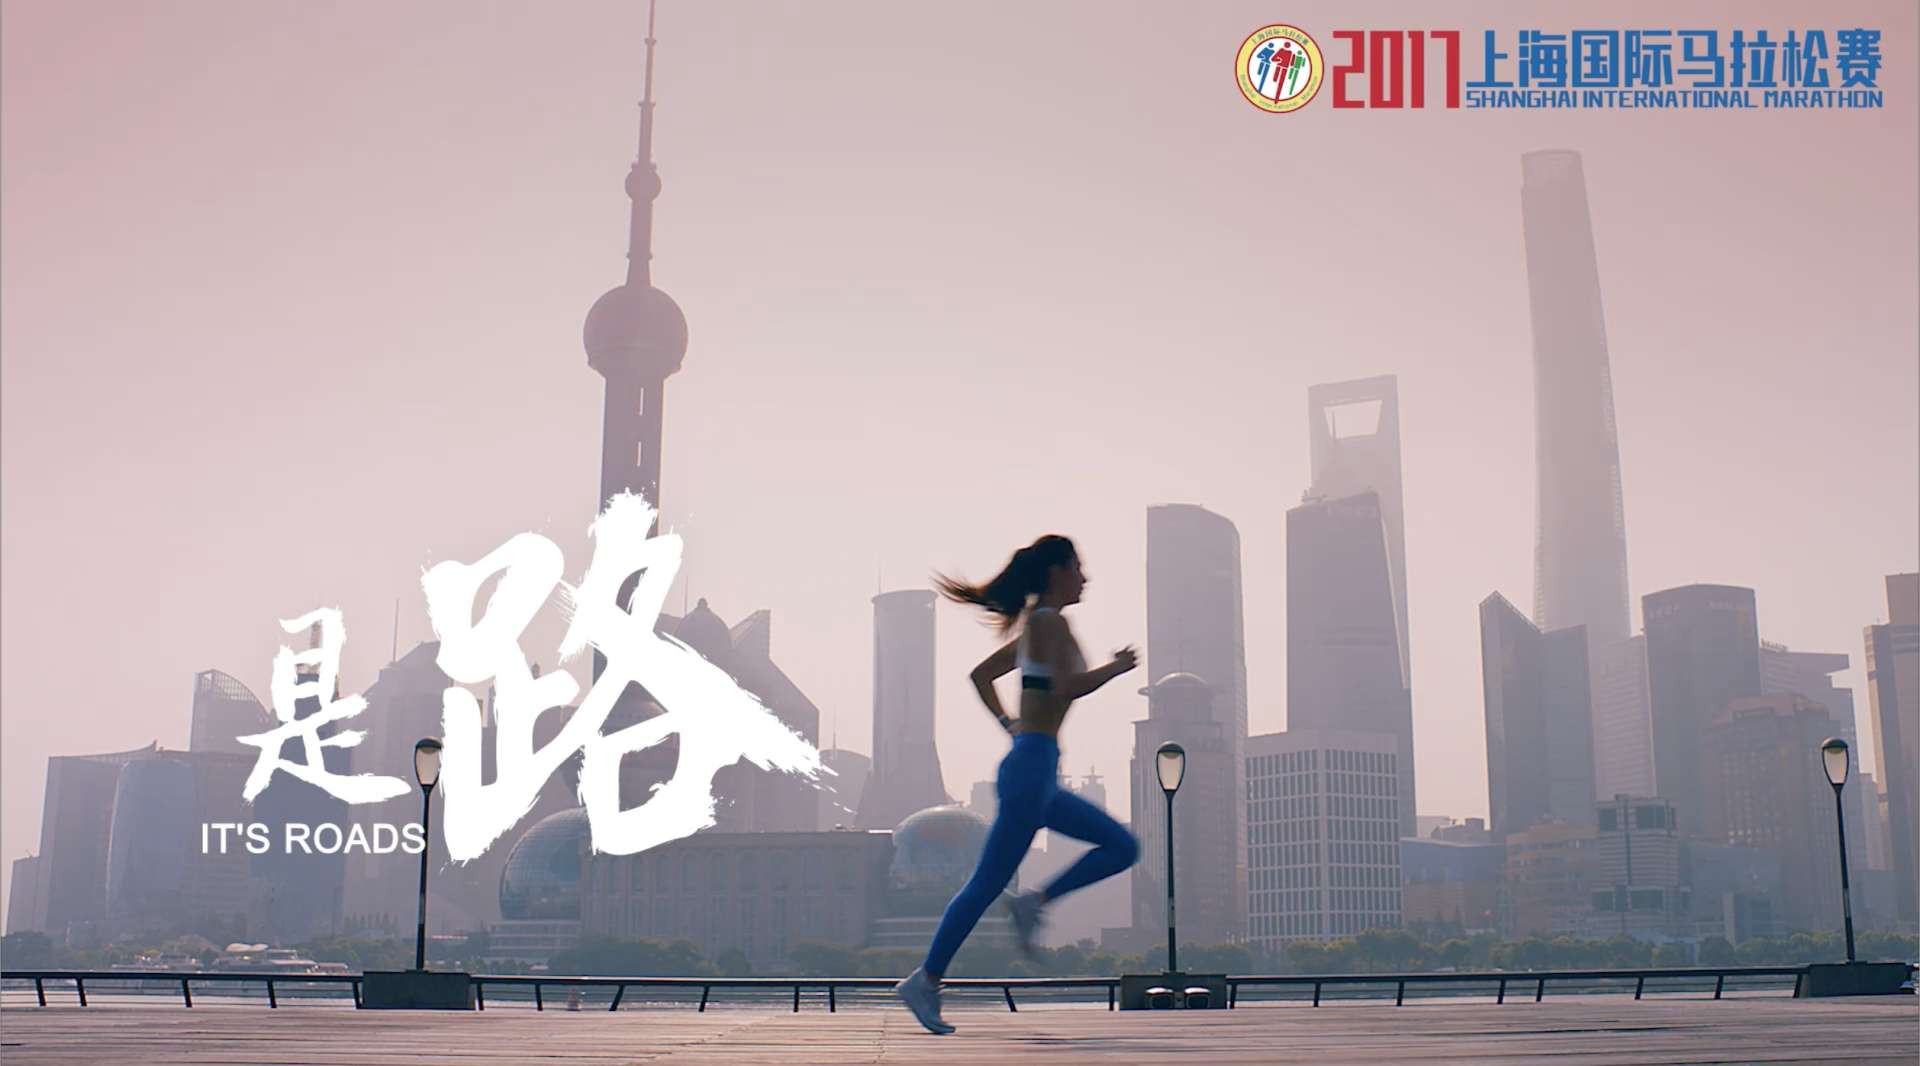 上海国际马拉松赛 官方宣传片